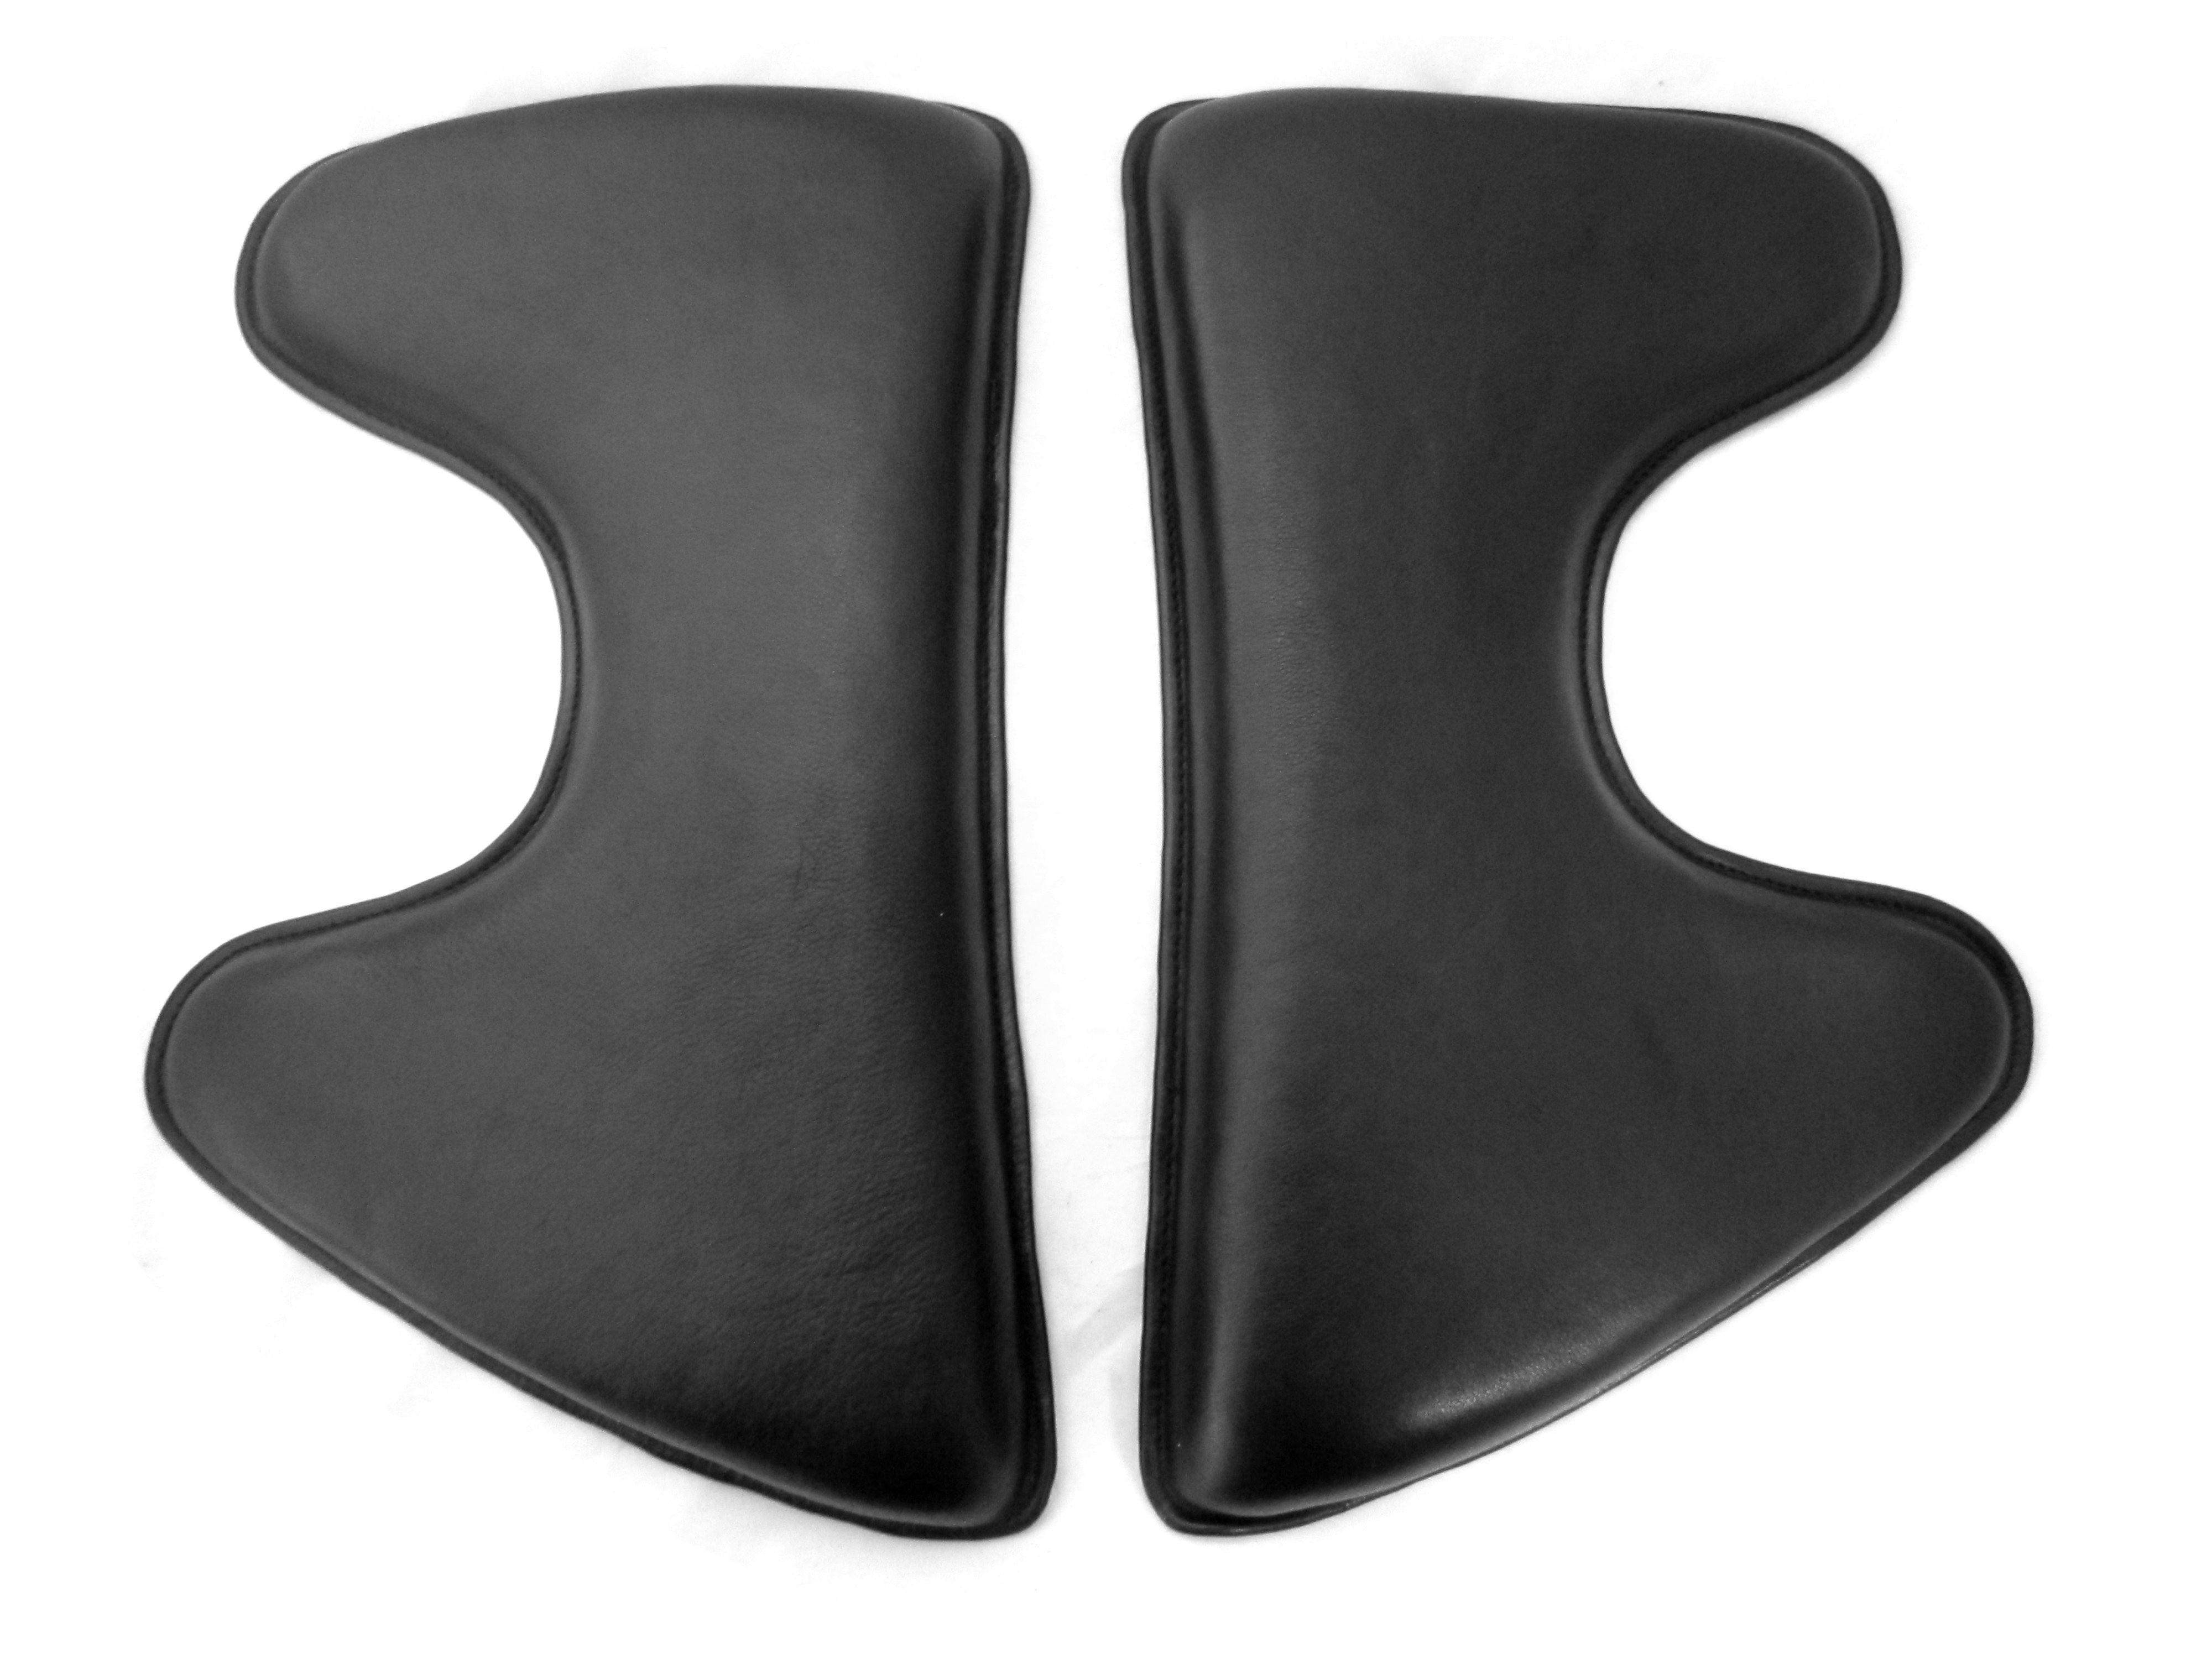 Coussin Velcro en forme de coin de 3-4-5 cm de haut. Forme espagnole ; Coussin de selle/panneaux Velcro